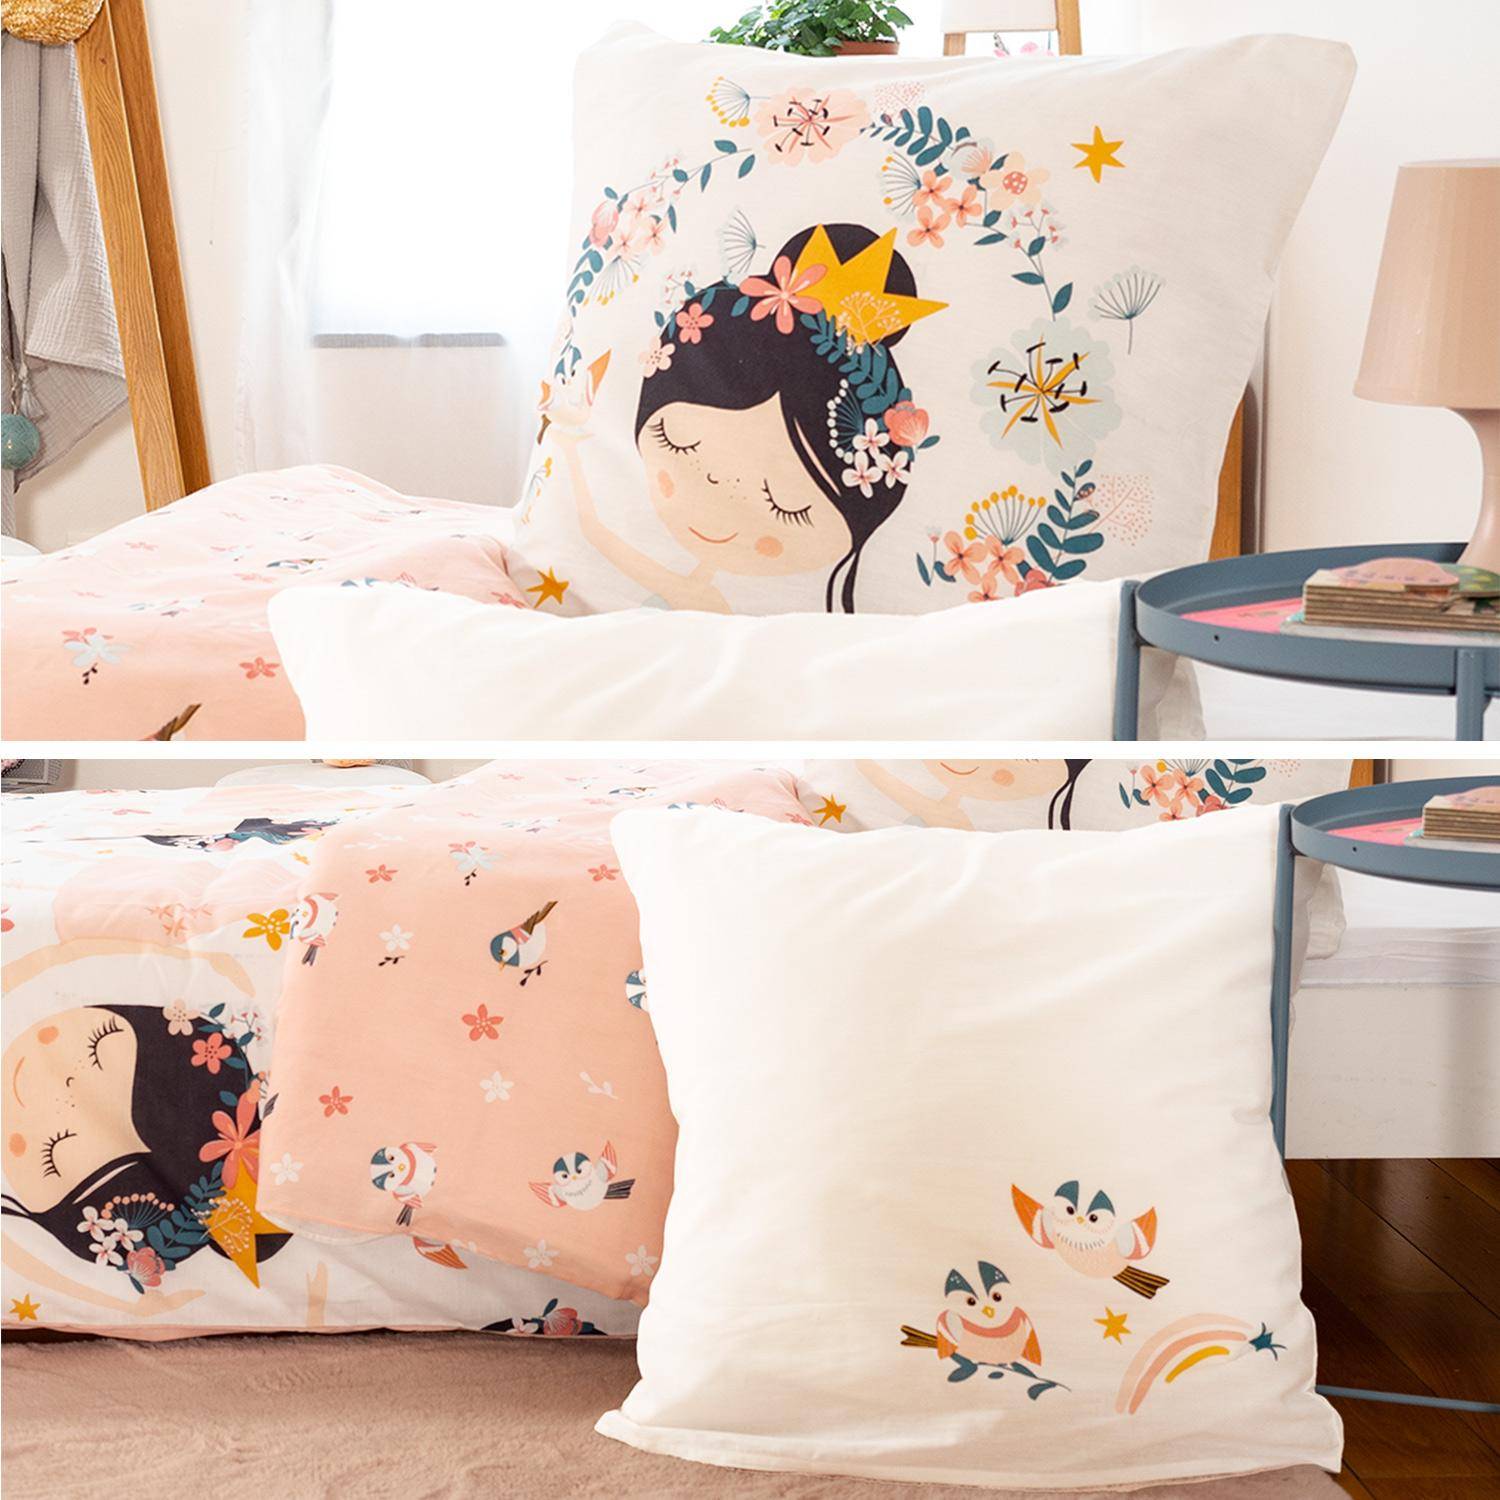 Parure de lit réversible 1 place imprimé princesse et oiseaux en polycoton, 1 housse de couette et 1 oreiller Photo4